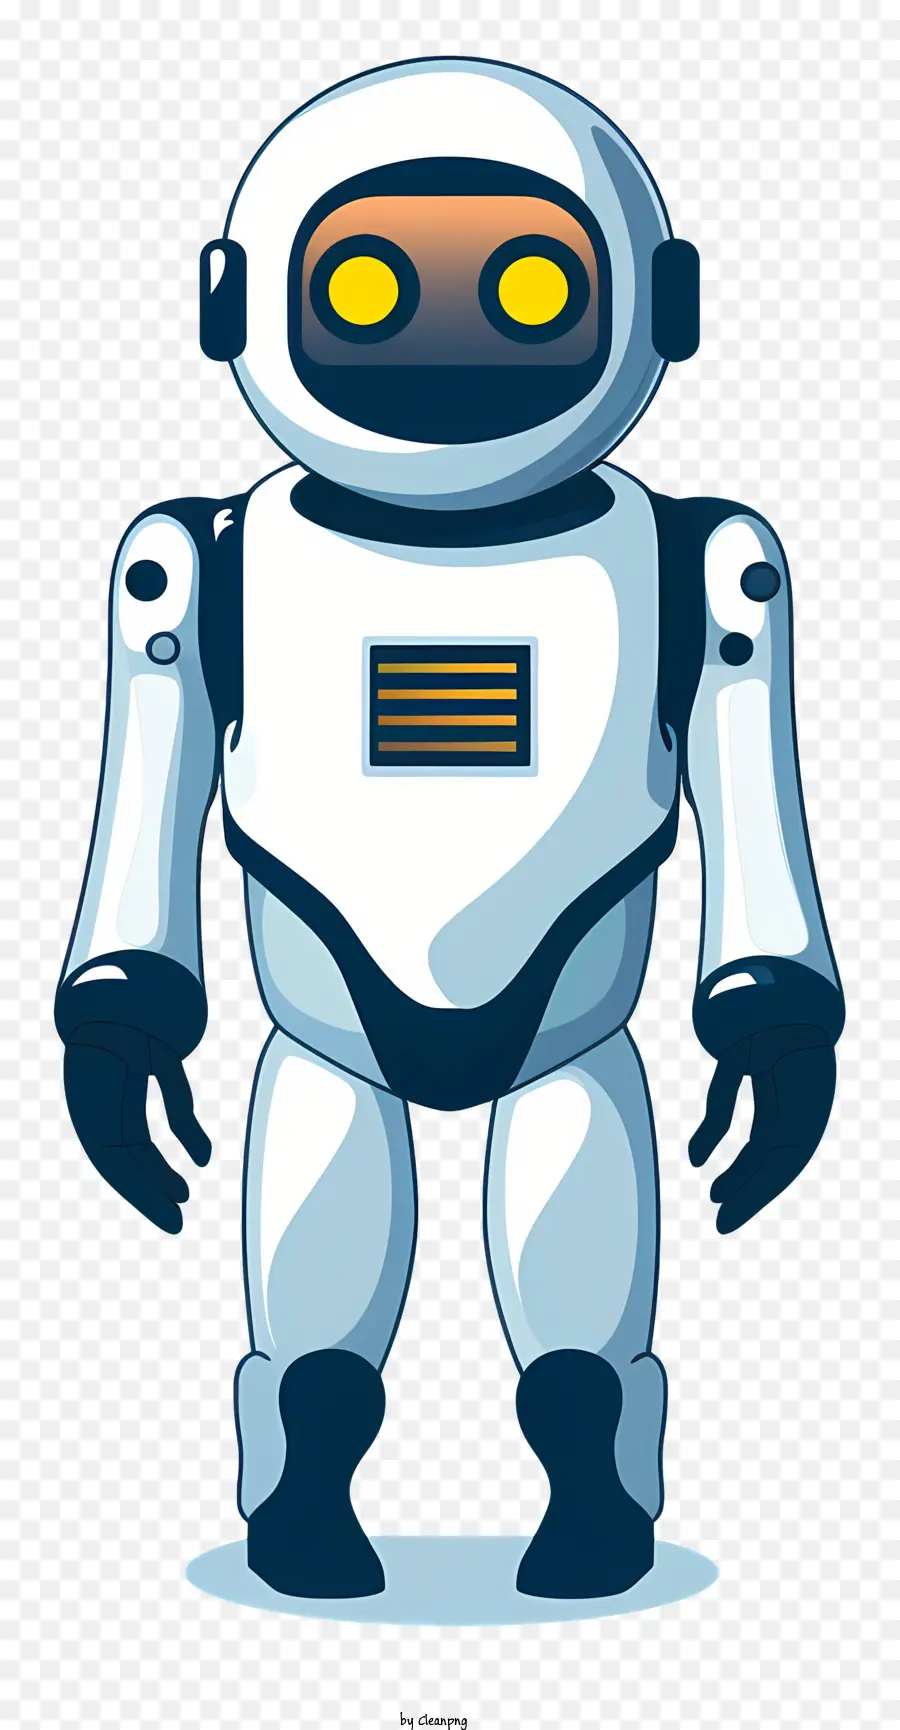 Roboter Humanoid Technologie Science Fiction Cartoon Charakter - Cartoon Humanoid Roboter mit gelben Augen und ernsthafter Ausdruck